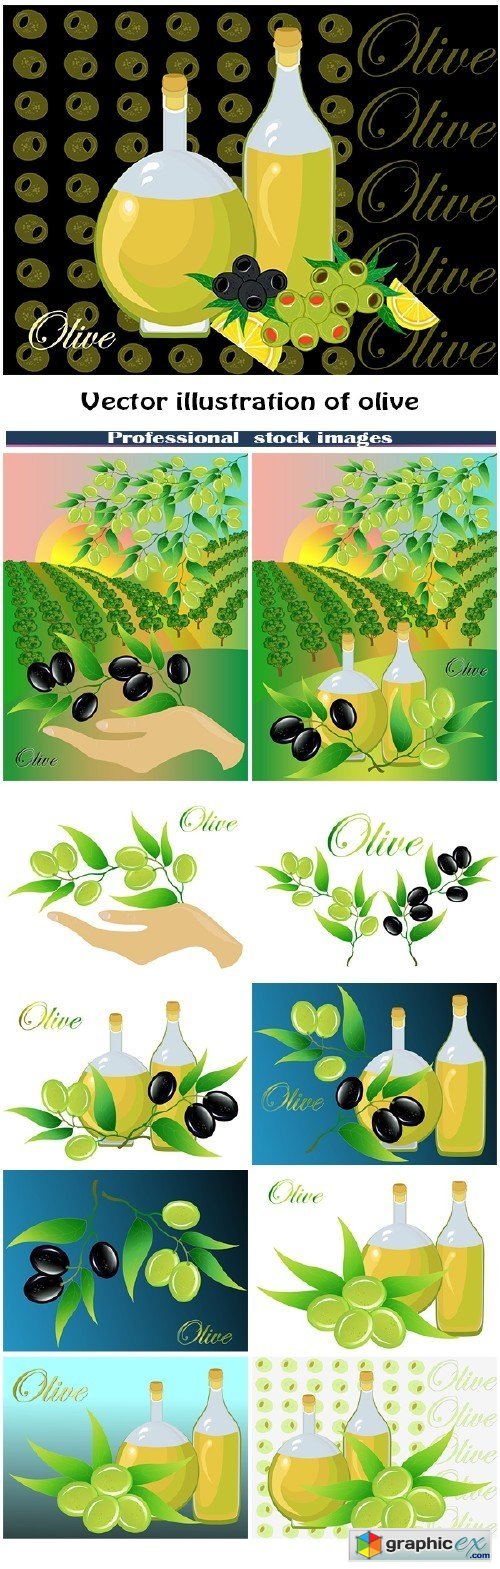 Illustration of olive